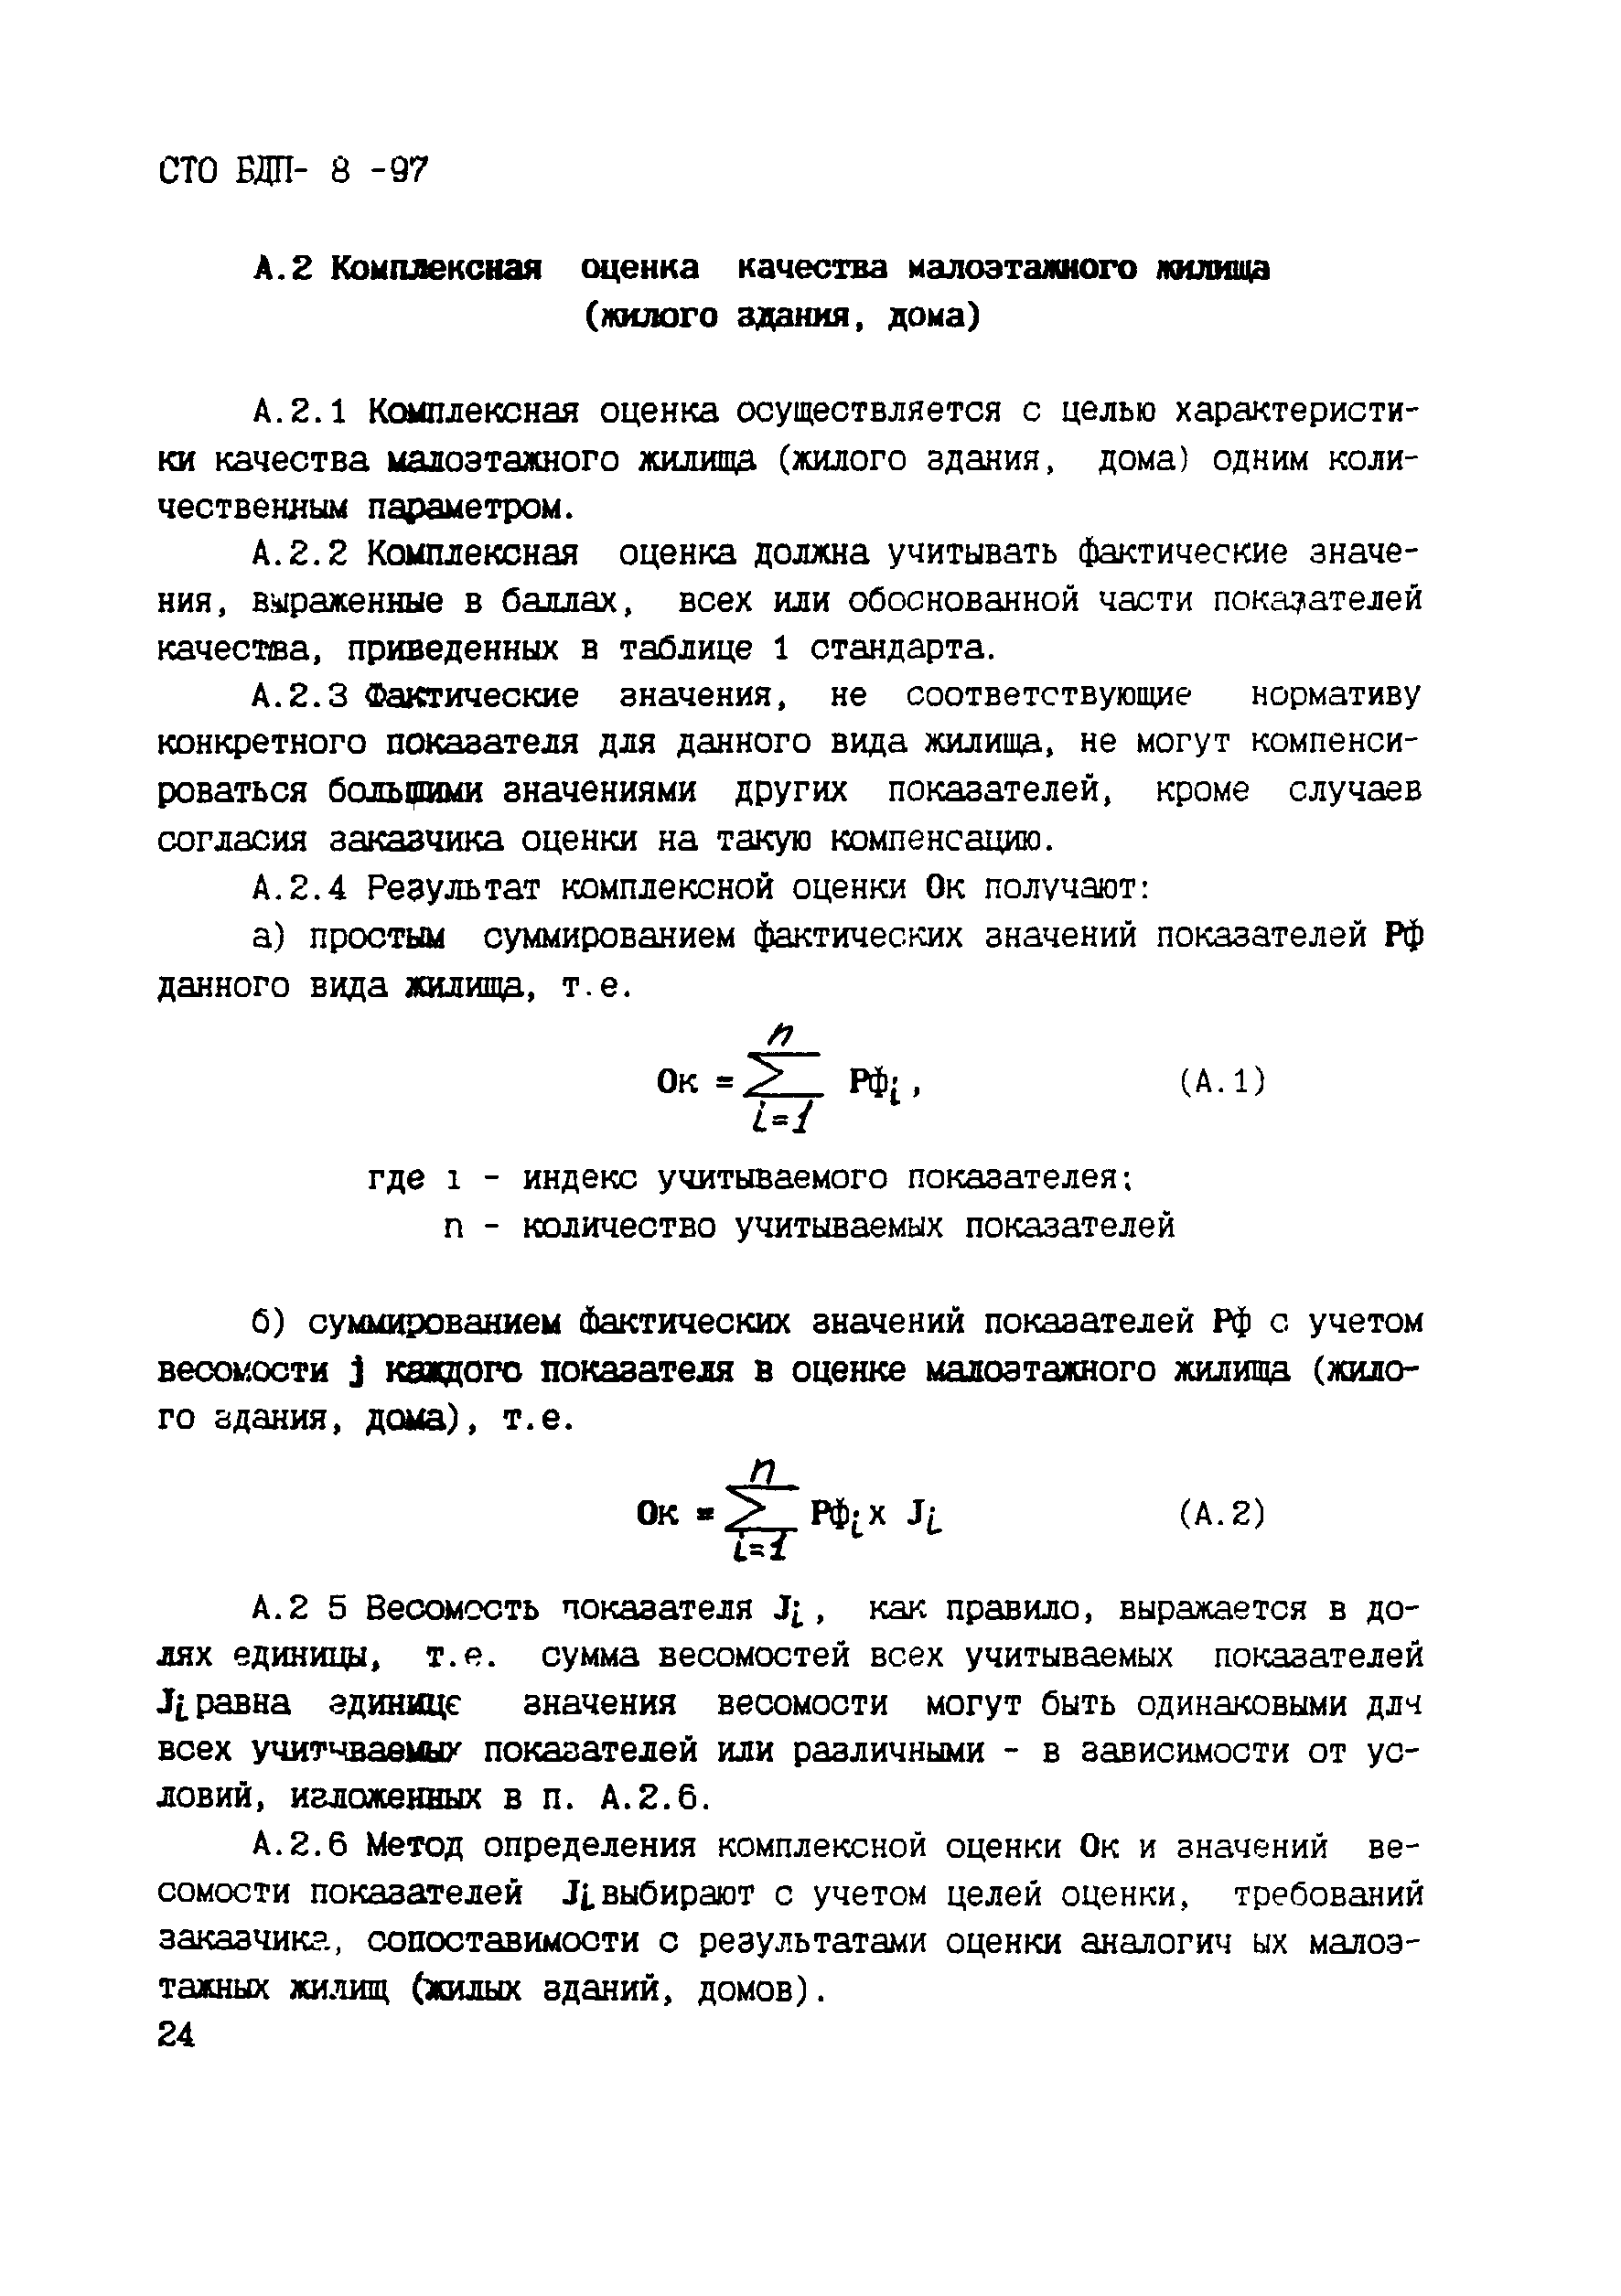 СТО БДП 8-97